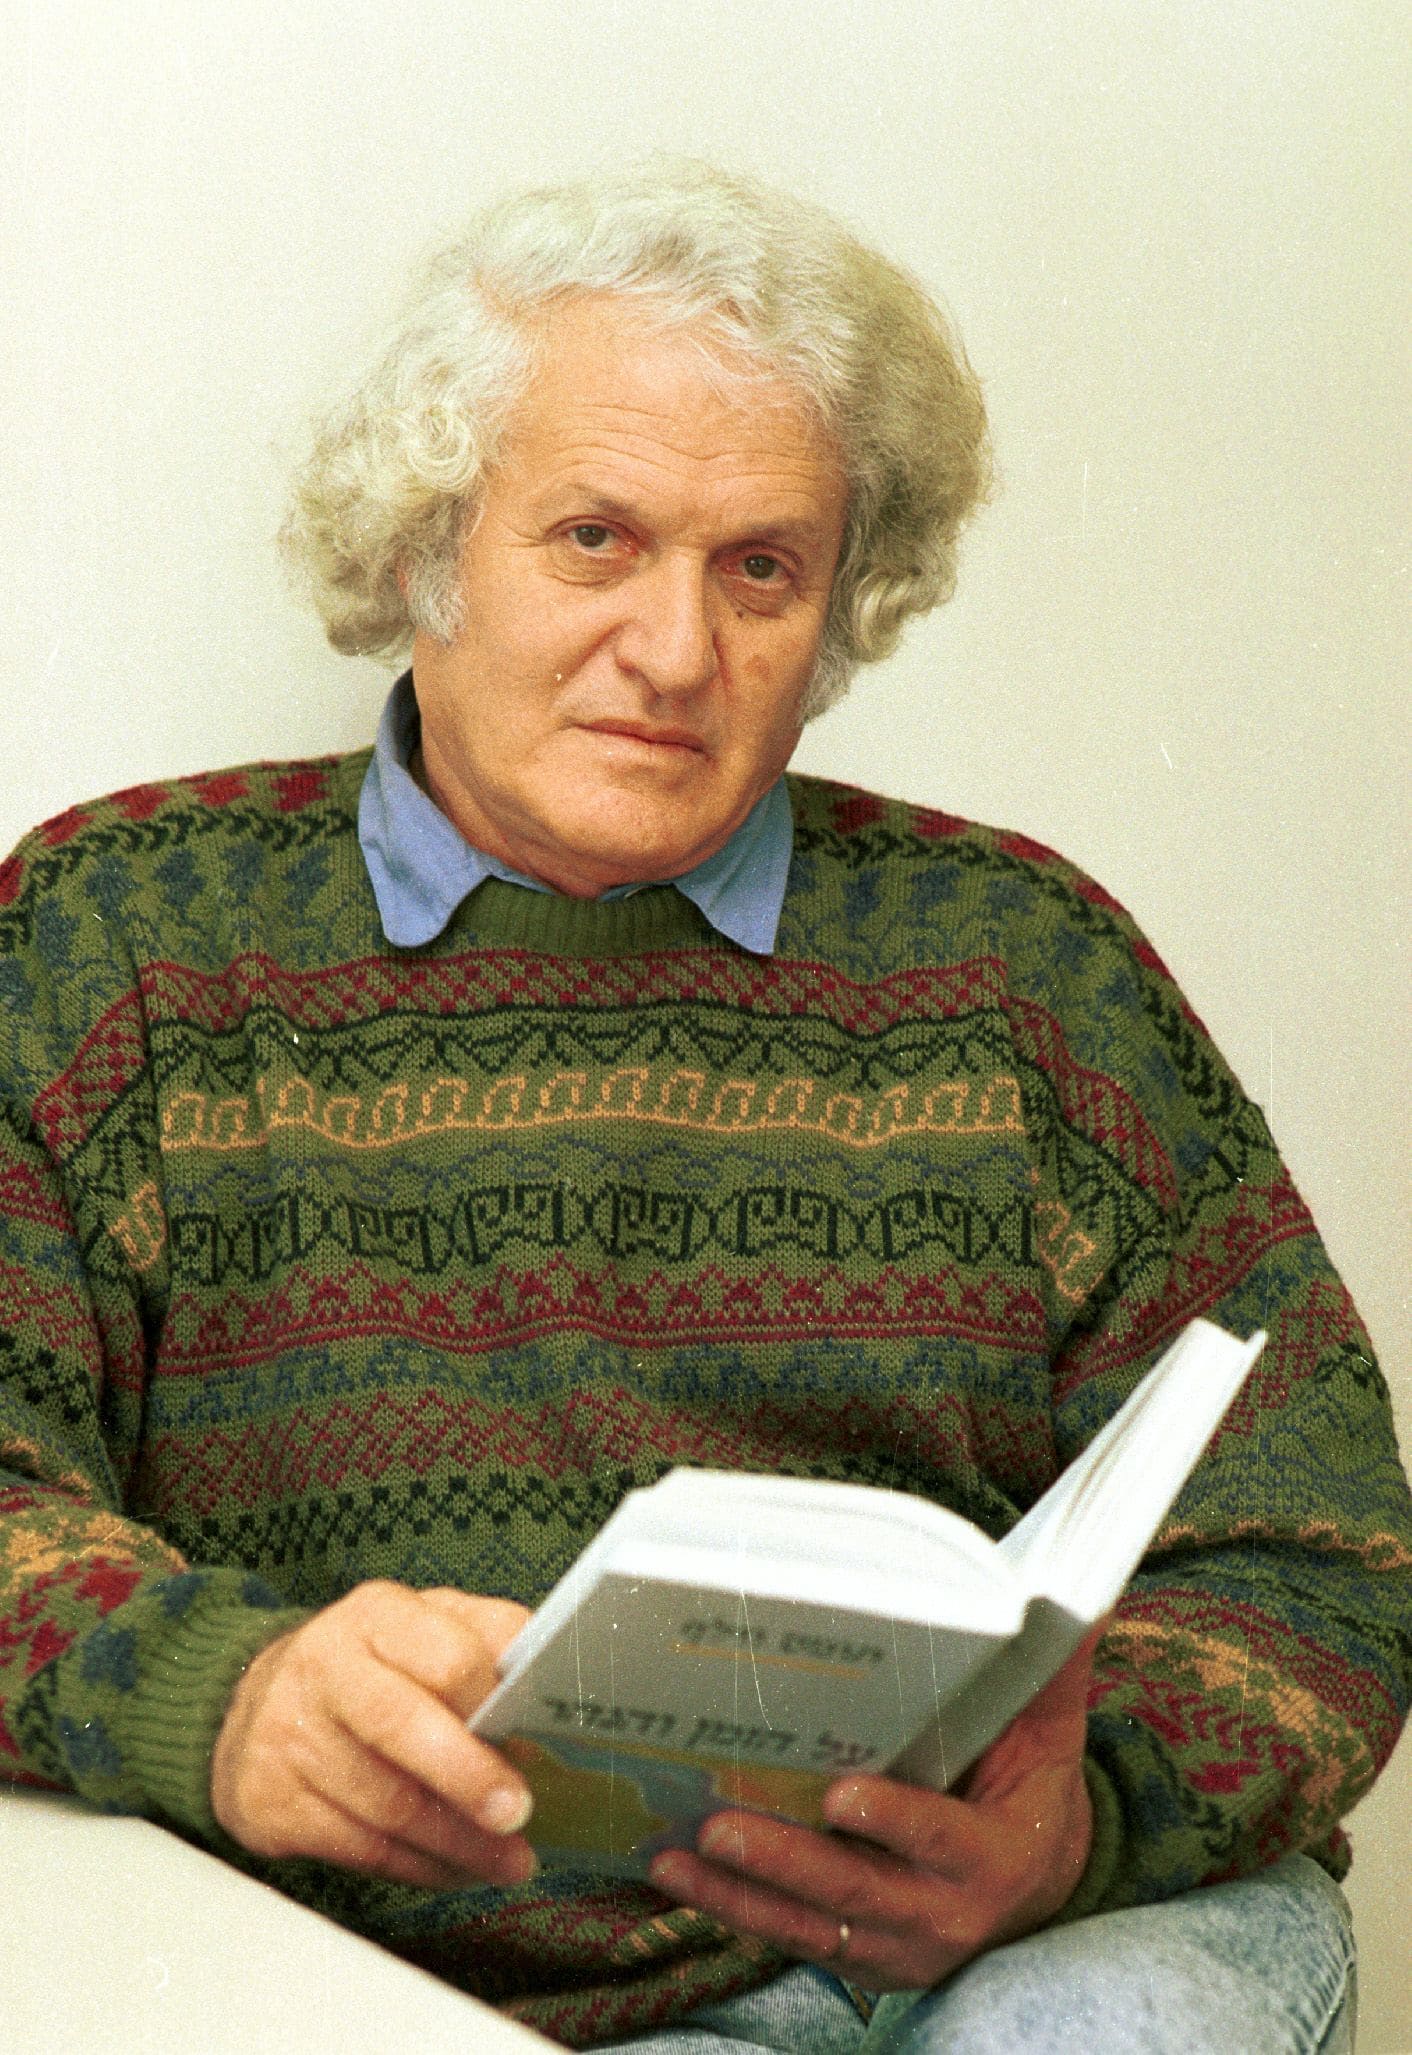 המשורר נתן יונתן בביתו, 5 בדצמבר 1991 (צילום: ורד פאר/ארכיון דן הדני, הספרייה הלאומית)